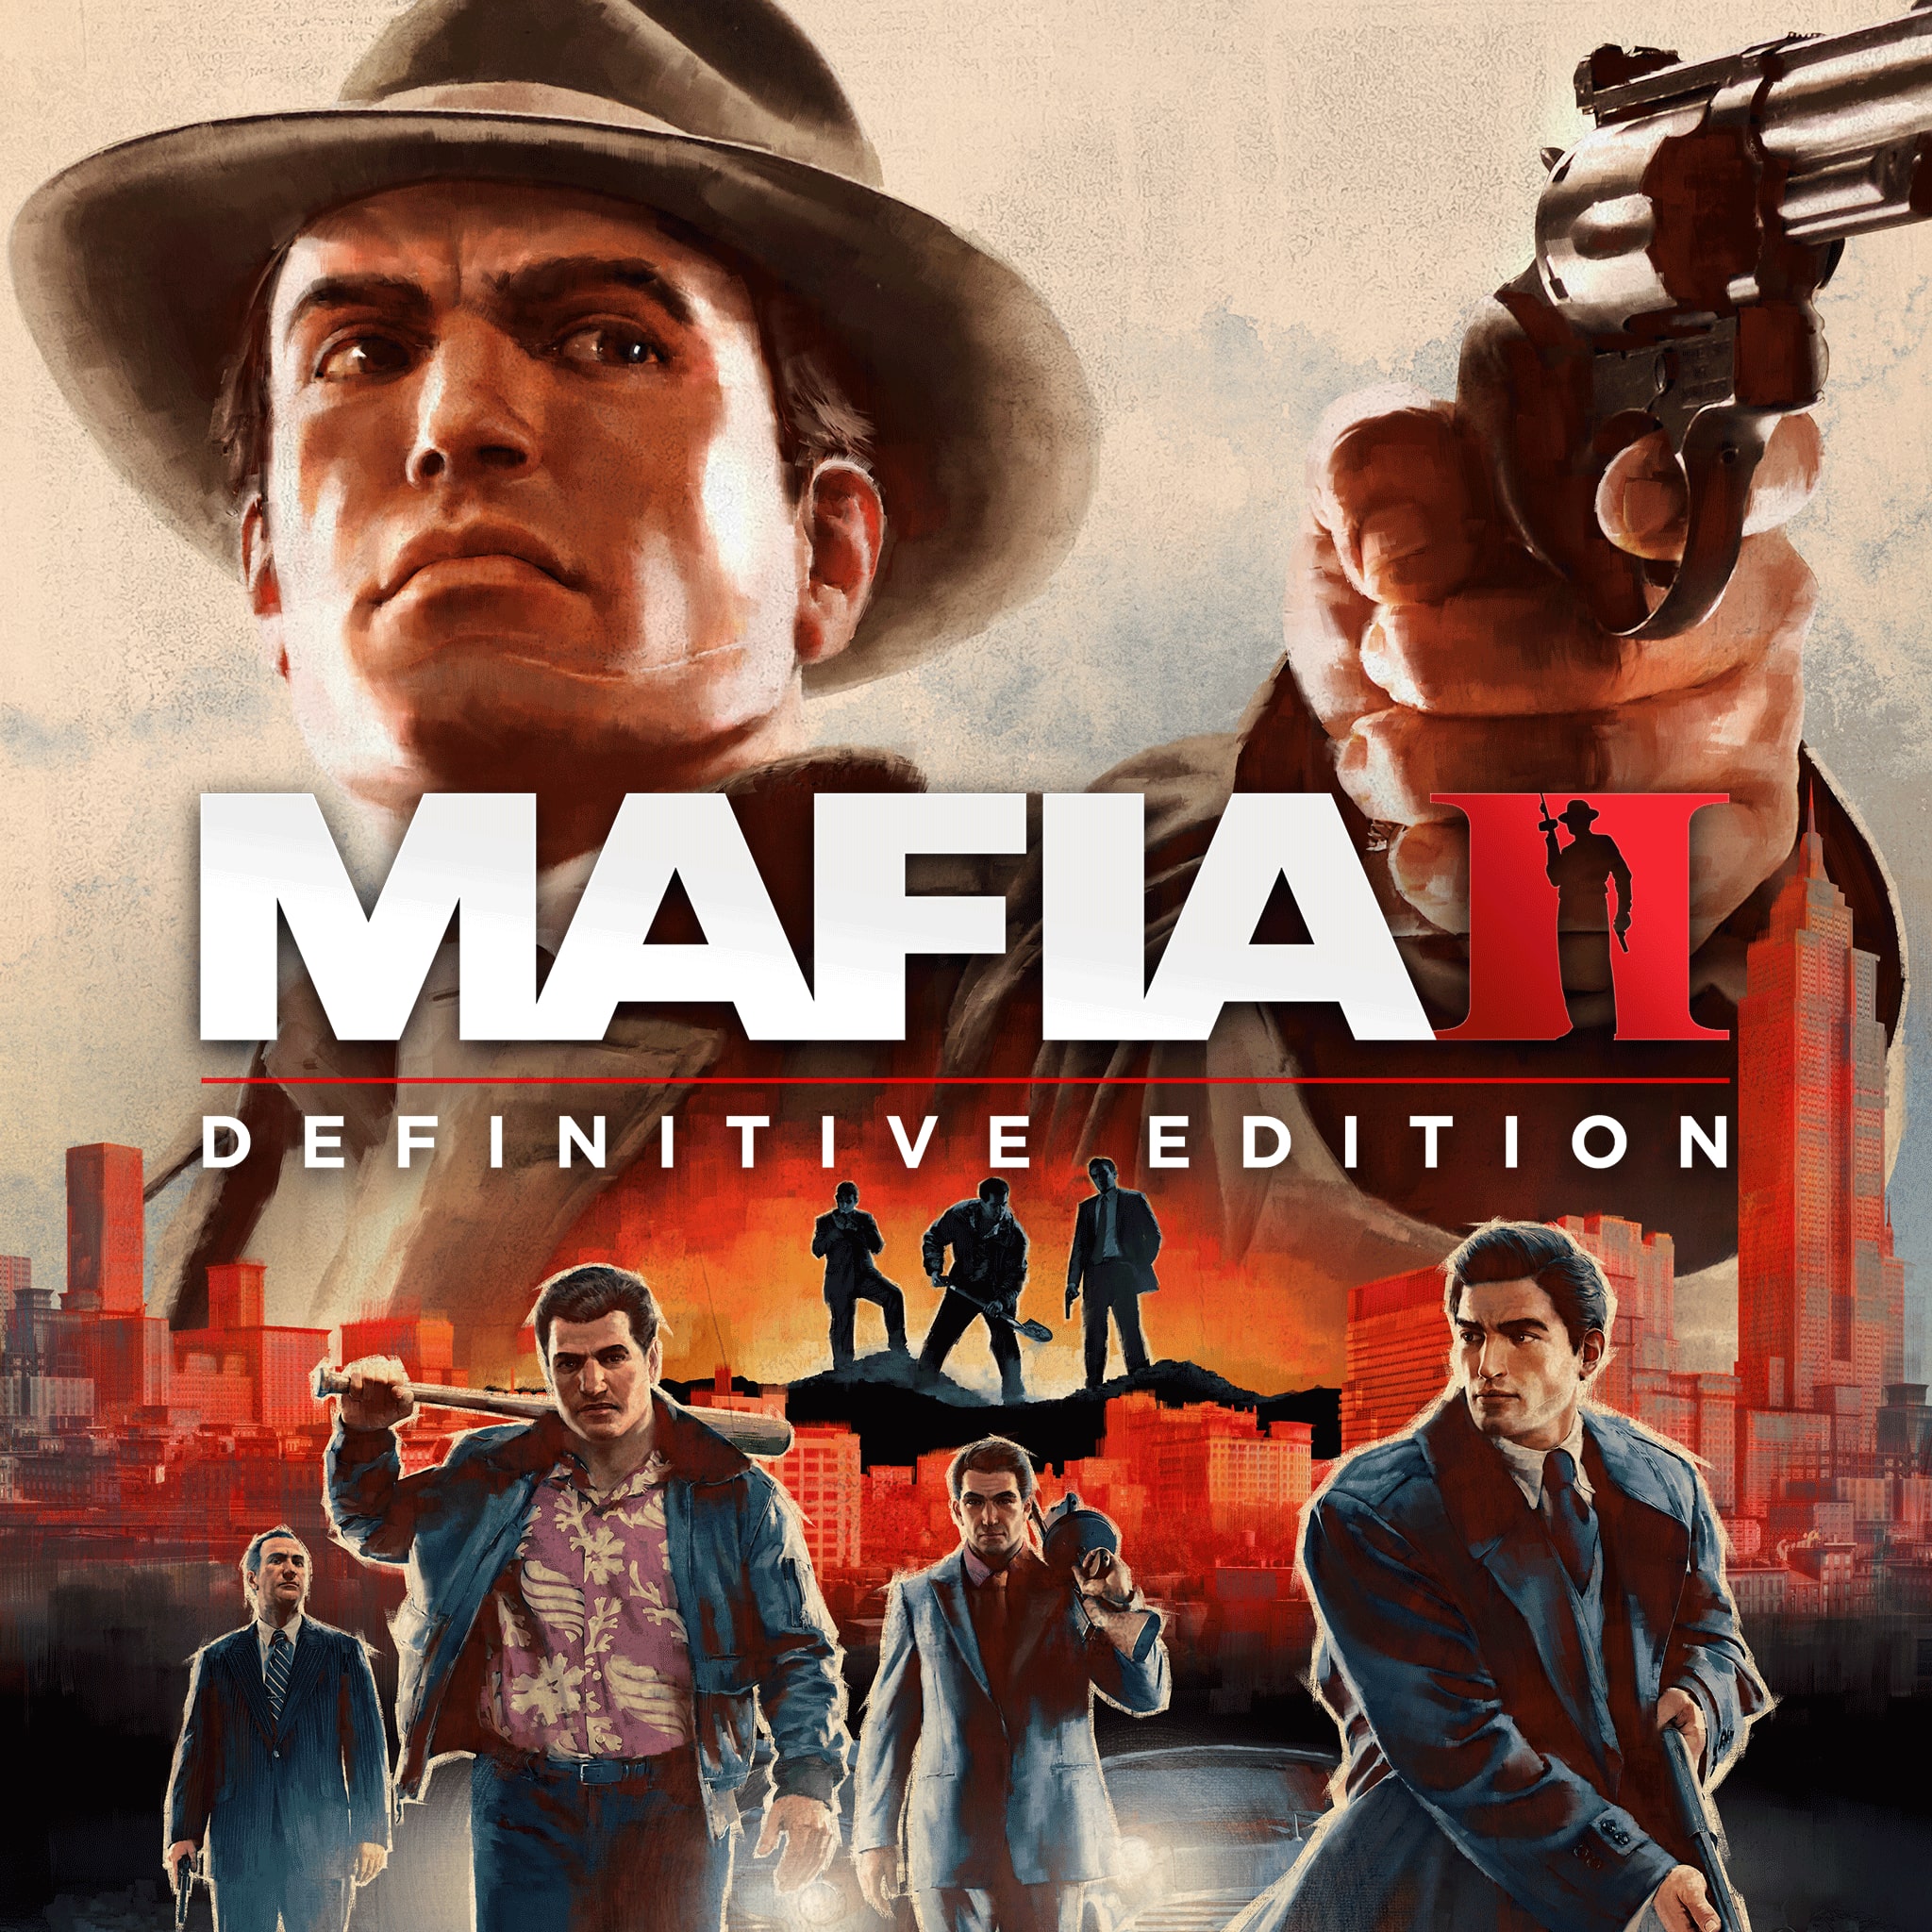 Mafia II: Edycja Ostateczna